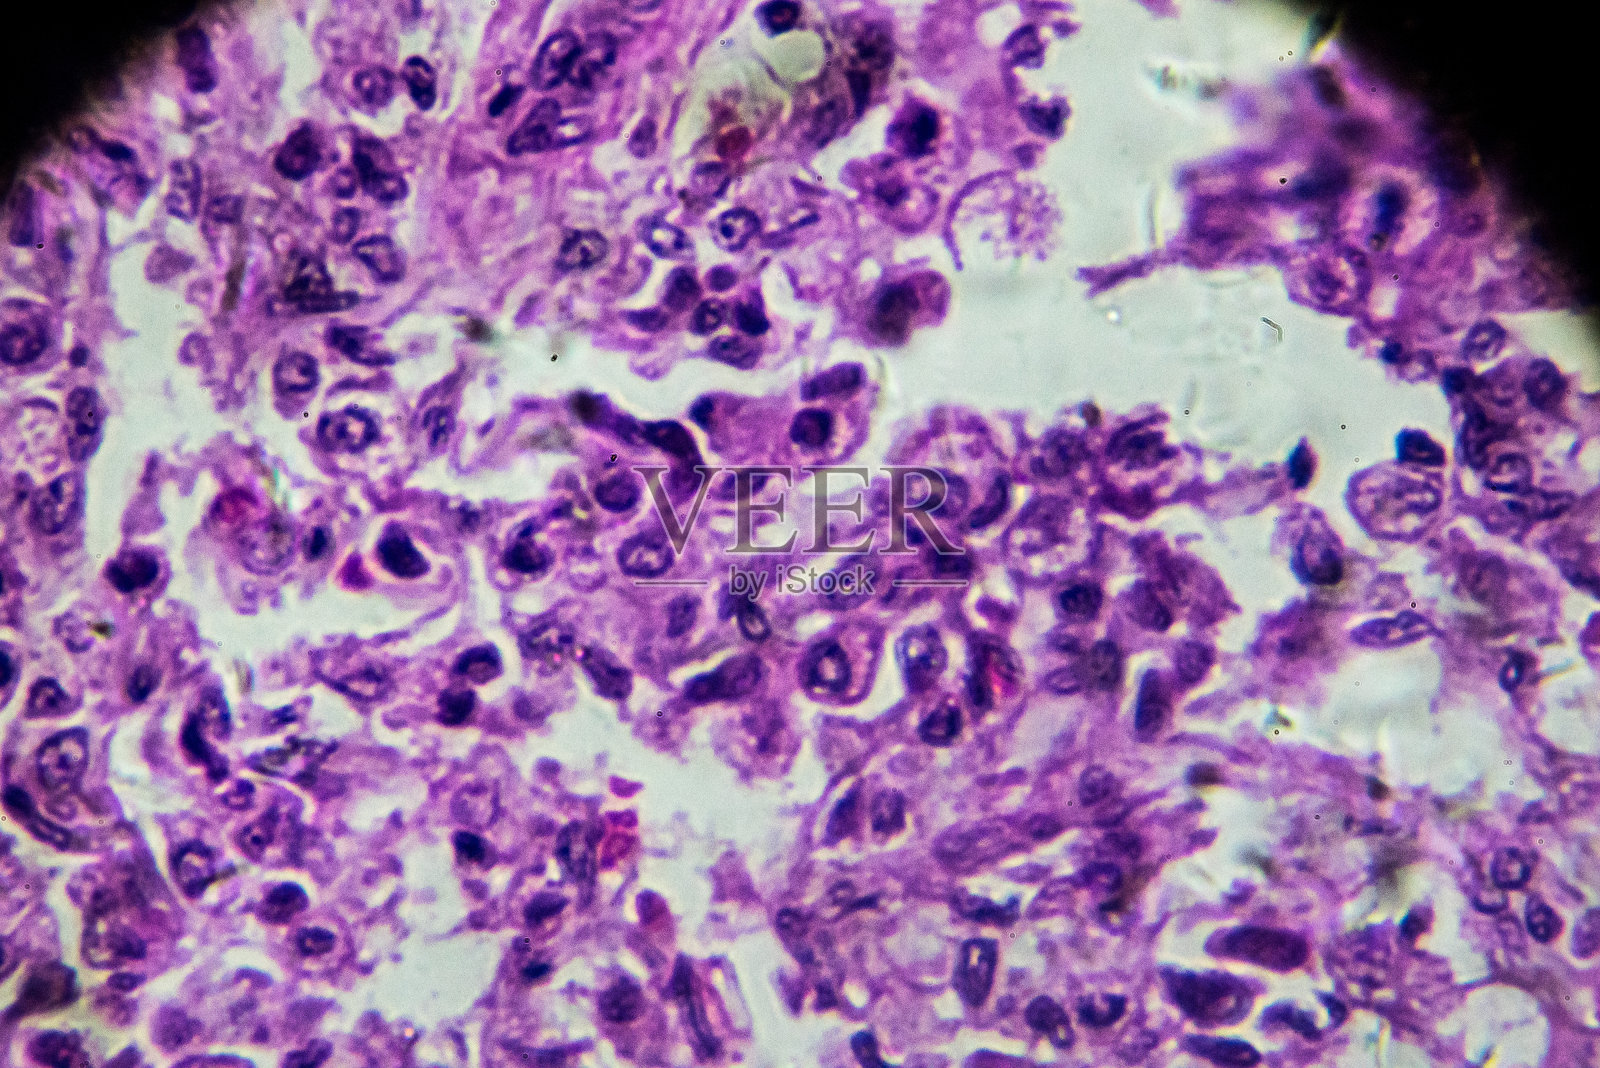 显微镜下小叶性肺炎人体病理生物样本照片摄影图片